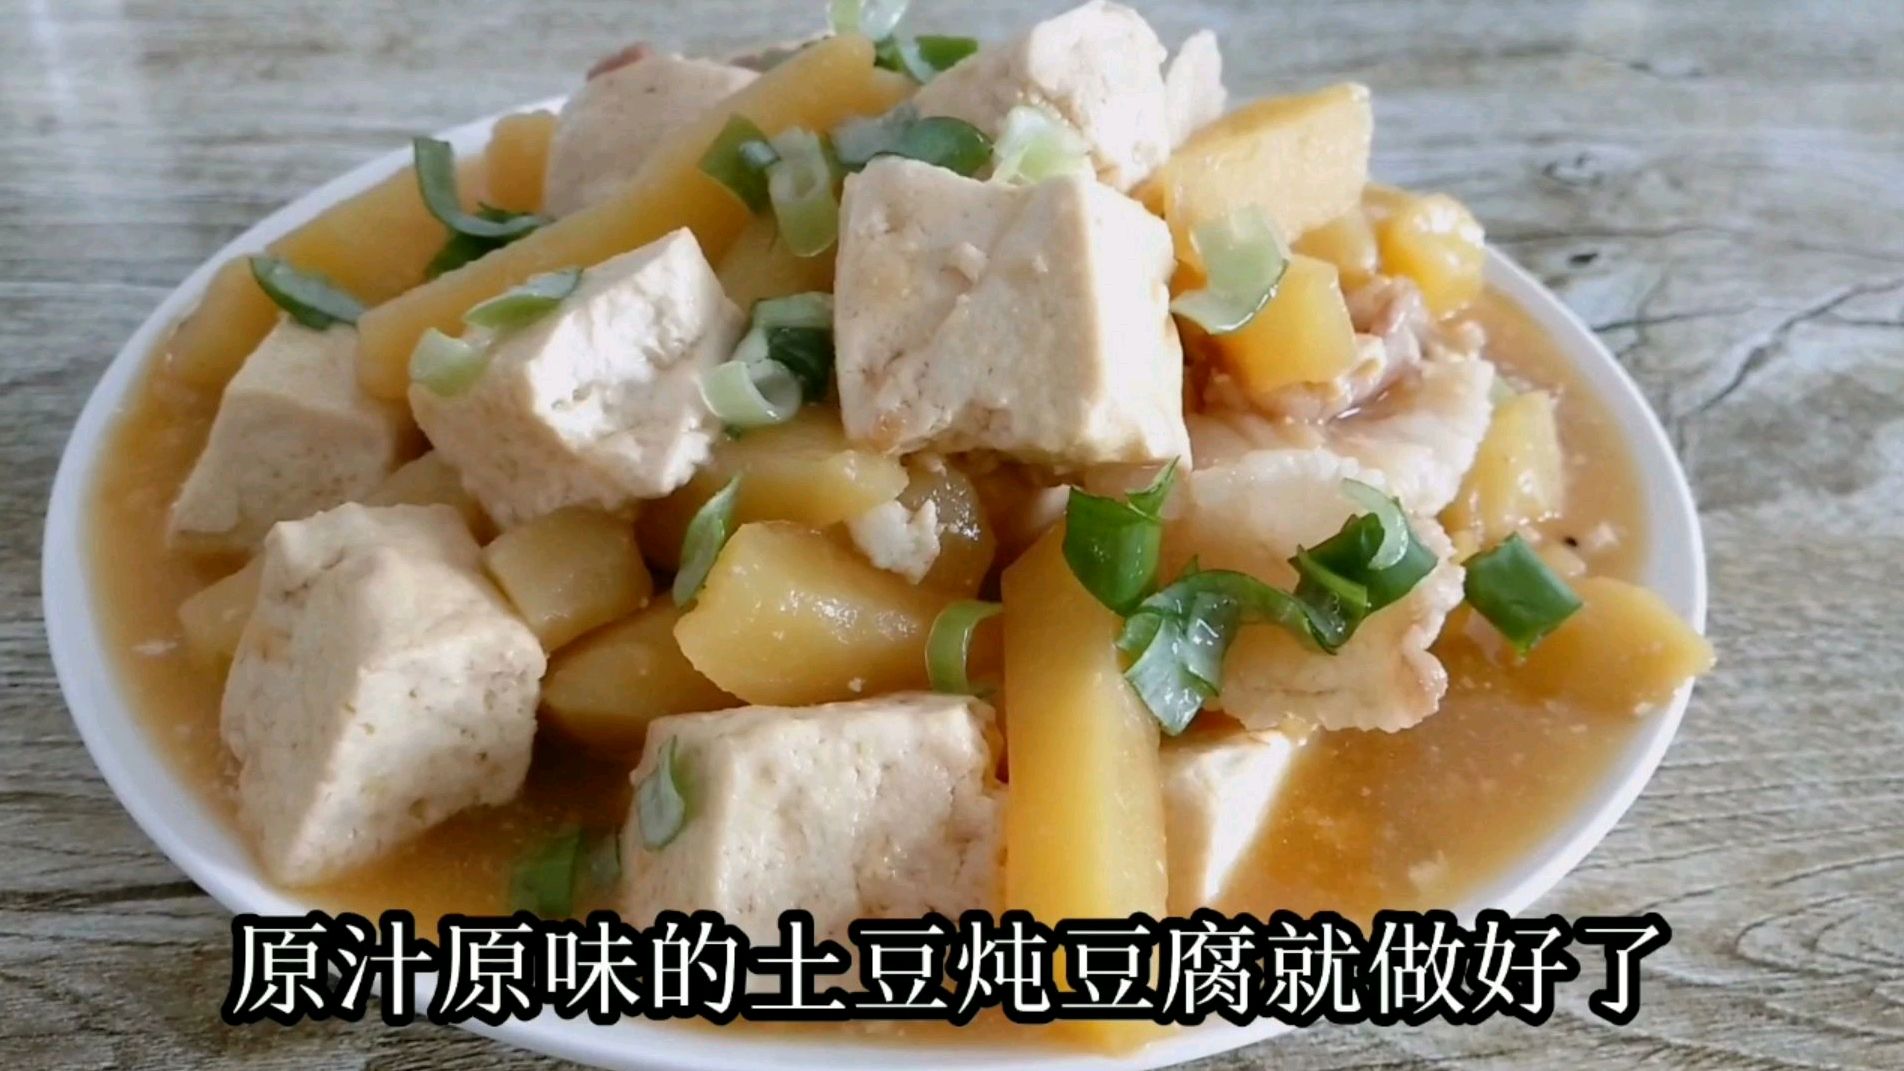 土豆炖豆腐家常做法,美味下饭,热乎乎的